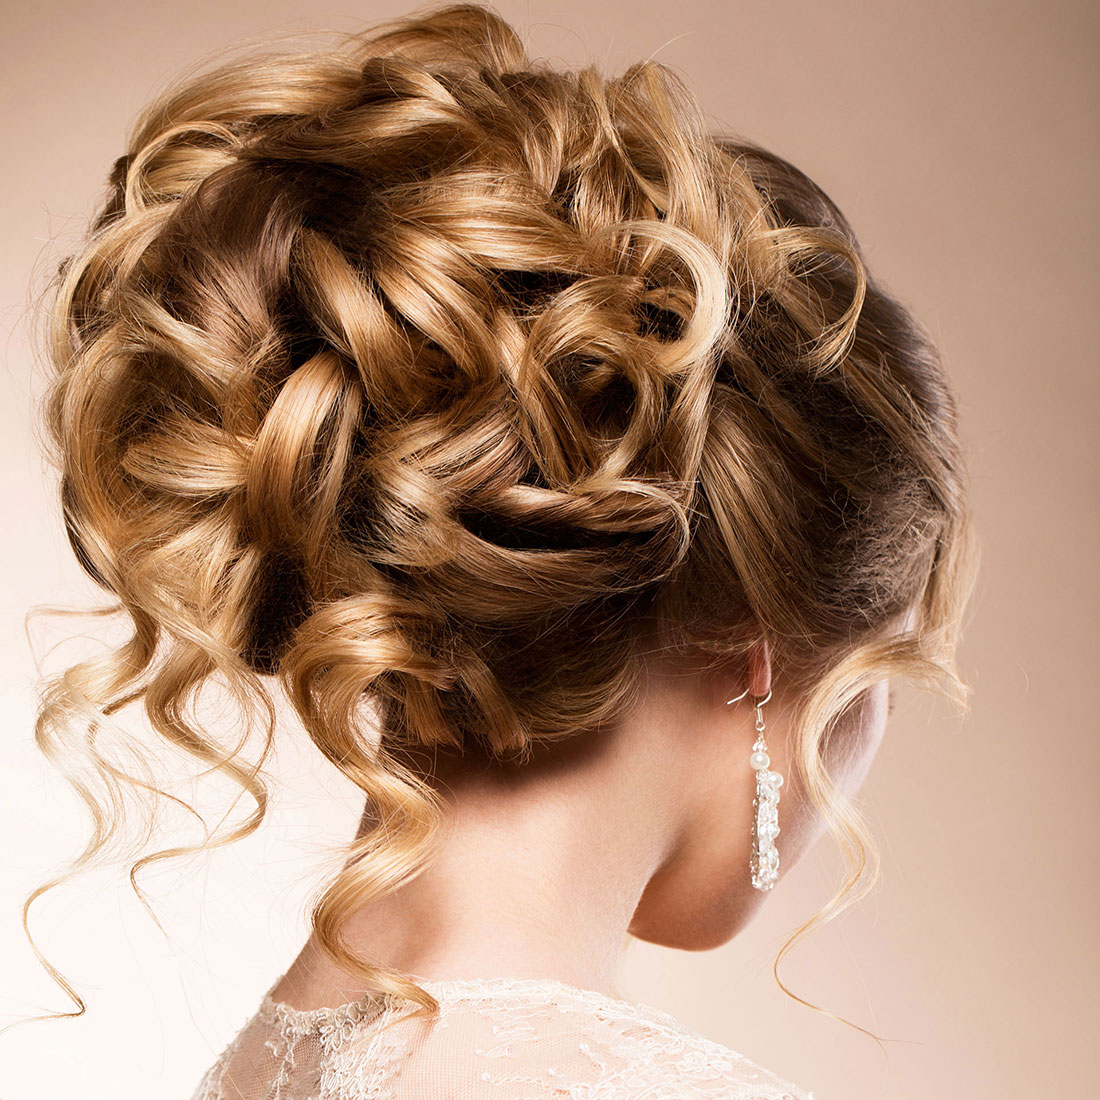 Close-up van bruidskapsel schuin van achteren, blond haar met highlights met slagen en krullen opgestoken.